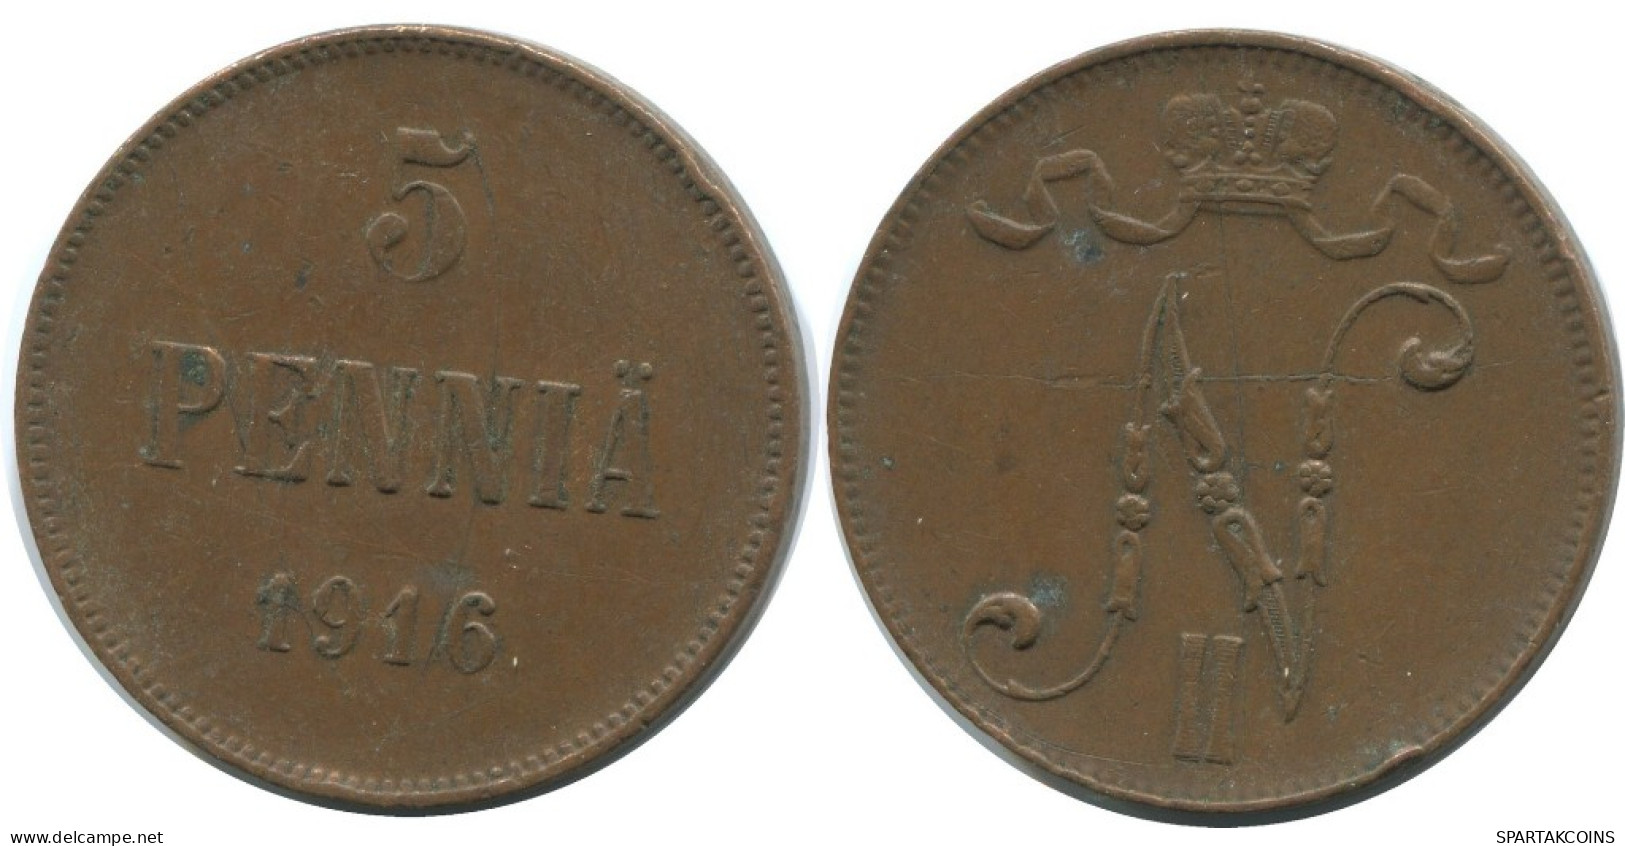 5 PENNIA 1916 FINLAND Coin RUSSIA EMPIRE #AB144.5.U.A - Finland